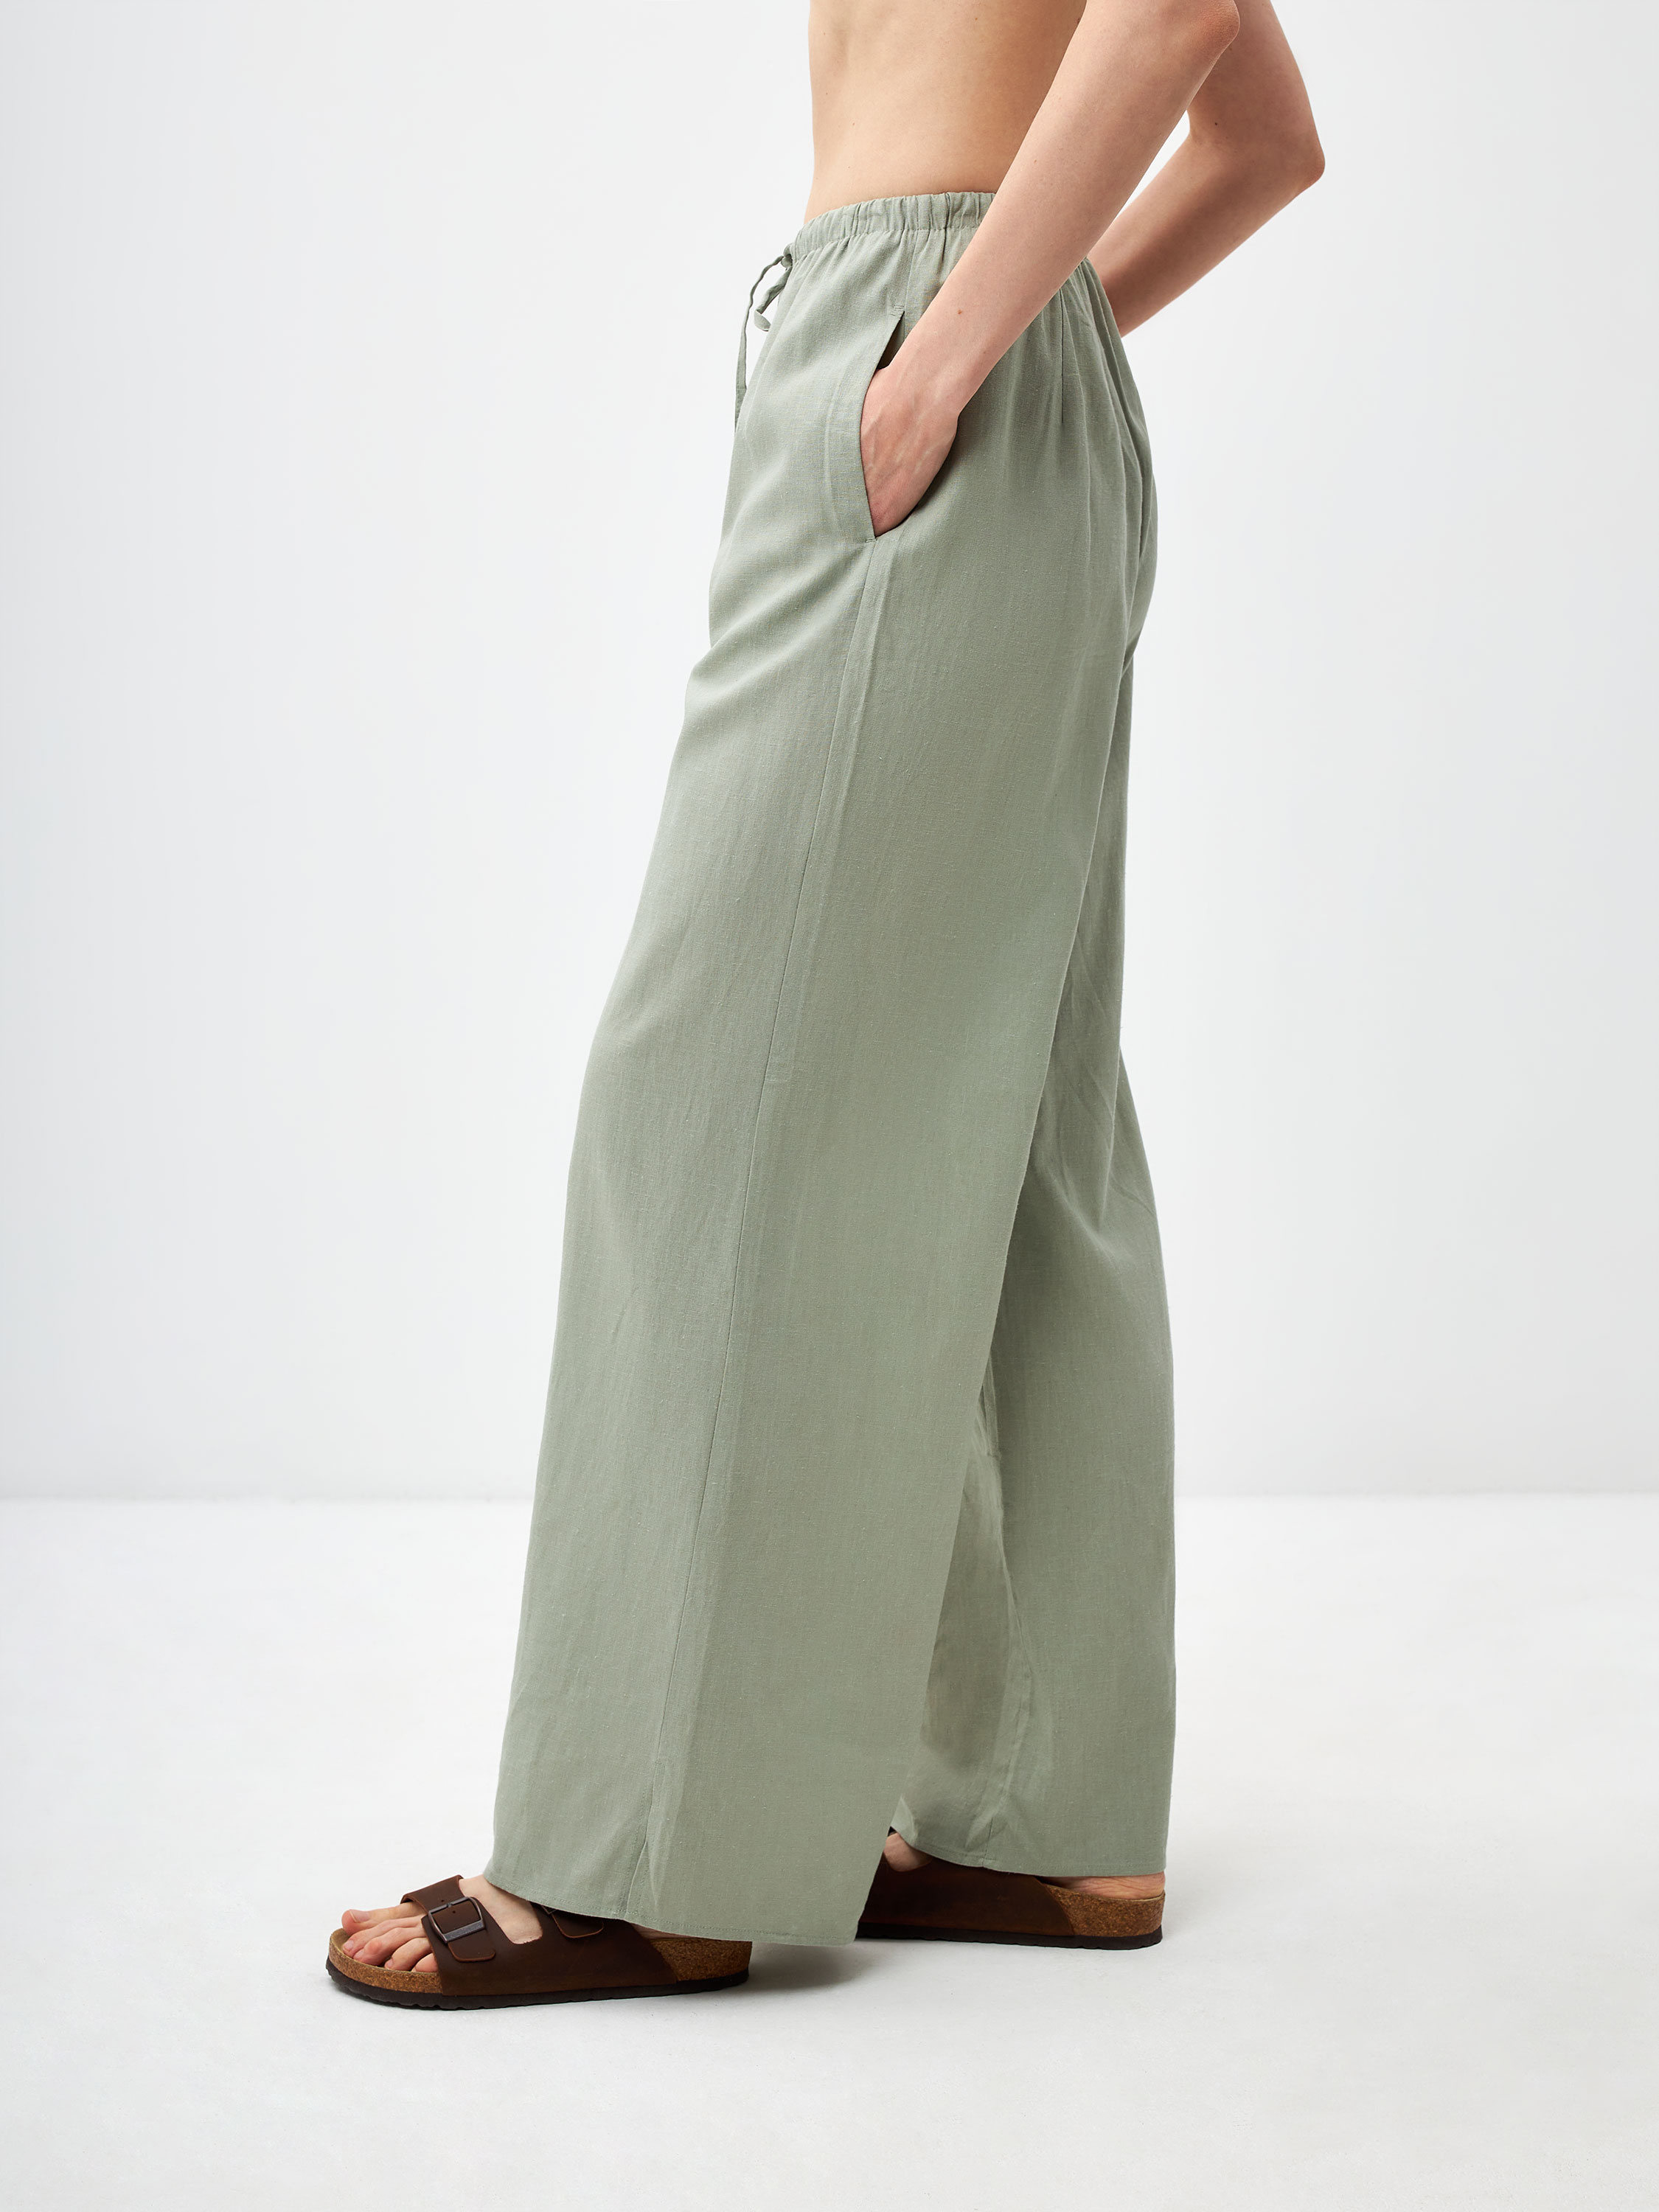 Широкие брюки из смесового льна цвет: дымчато-оливковый, артикул:3805011525 – купить в интернет-магазине sela